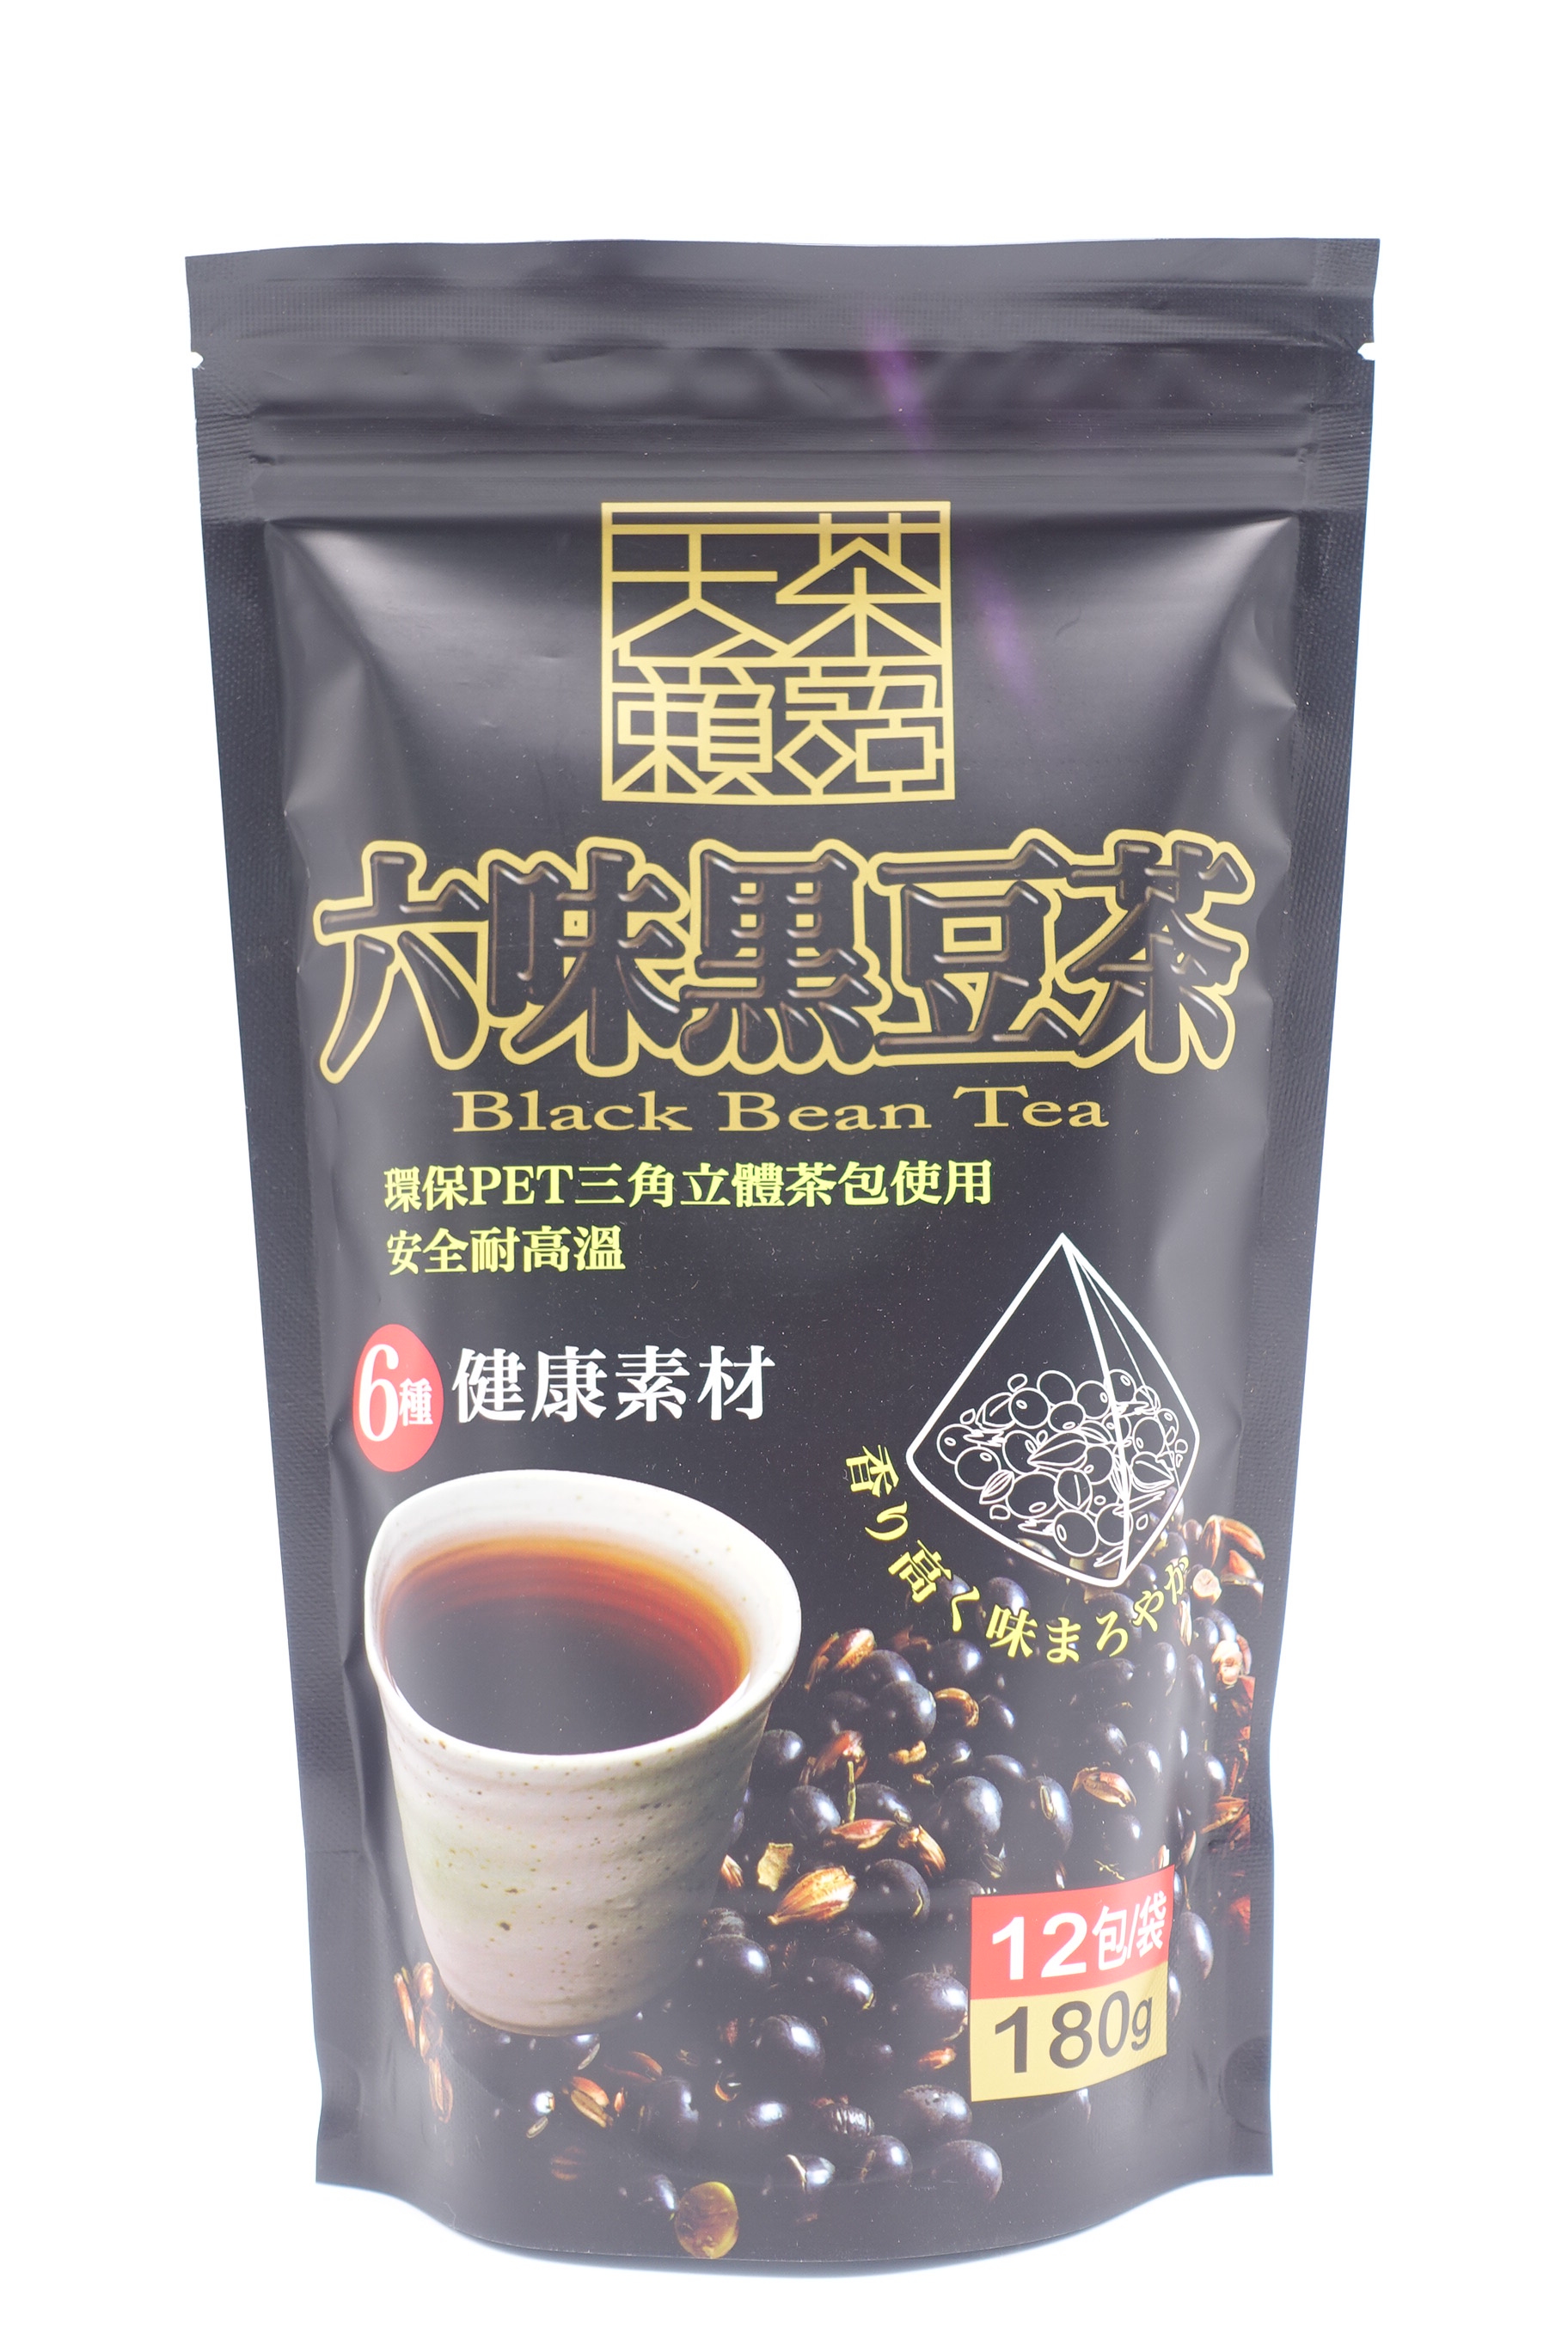 阿華師六味黑豆茶 15g x 12包